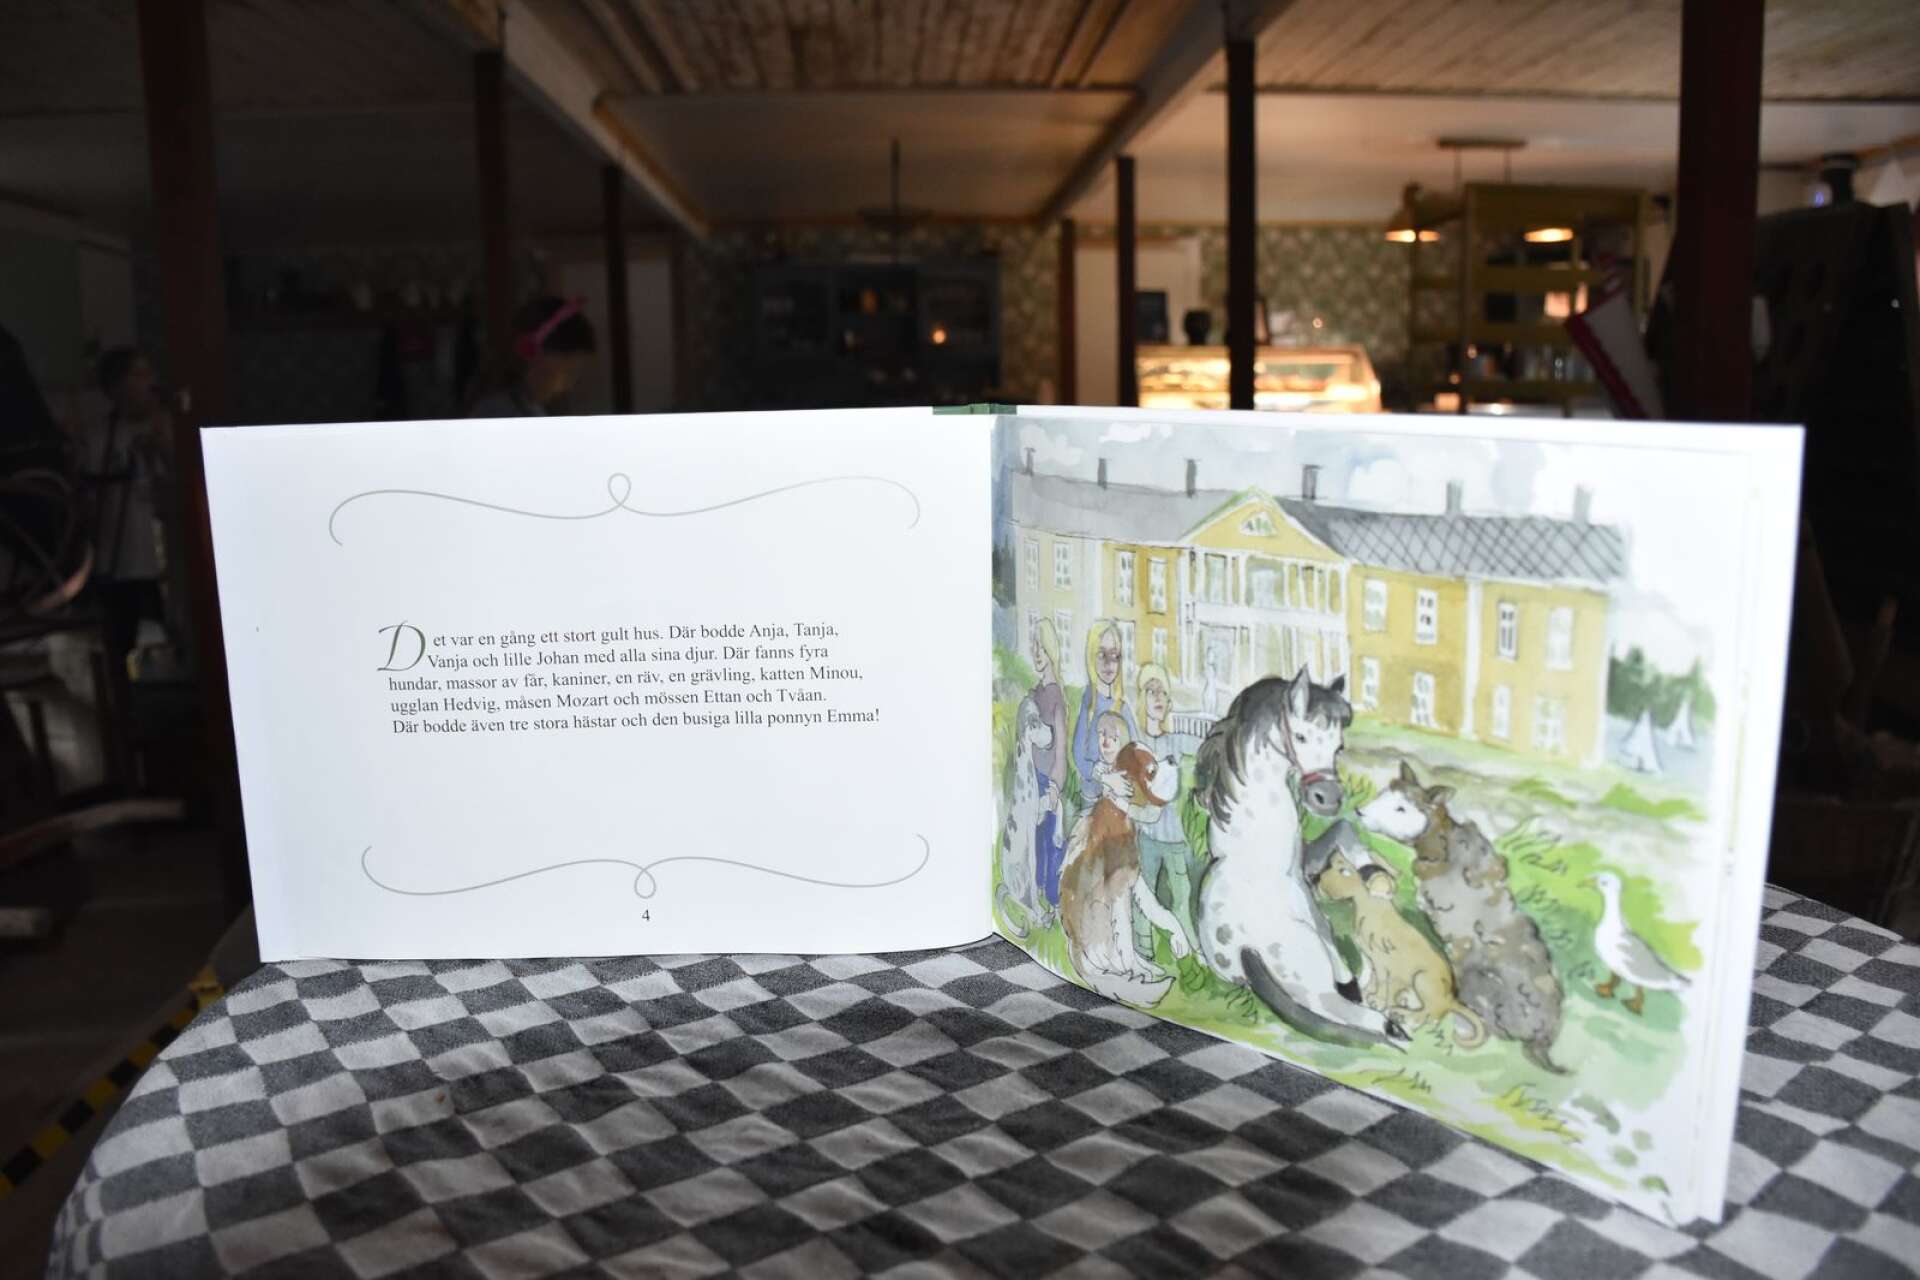 Konstnärinnan Marja i Myrom har målat bilderna i boken ”Söljebarnens djur - Emmas äventyr” som handlar om Söljebarnens sagolika värld. Under lördagen signerar Marja boken till de besökare som vill. 